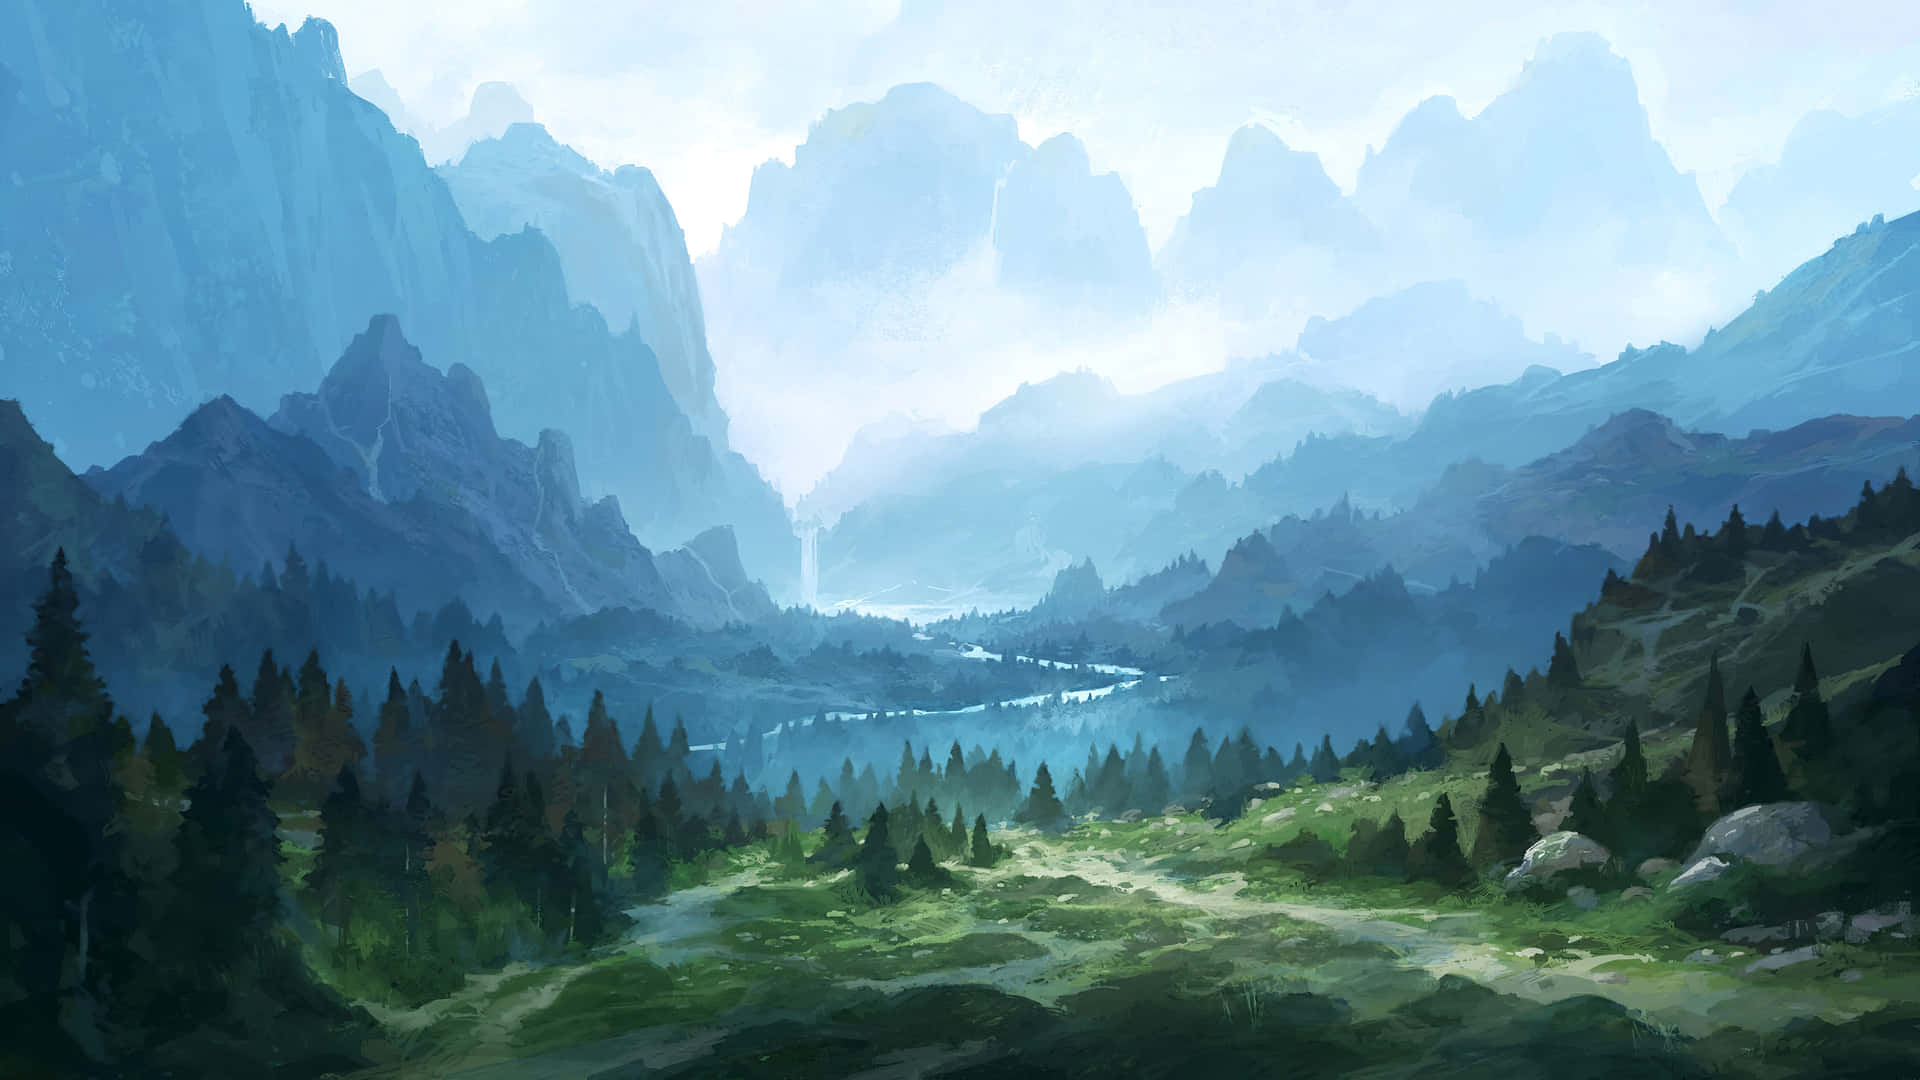 Download Misty Mountain Landscape Digital Art Wallpaper